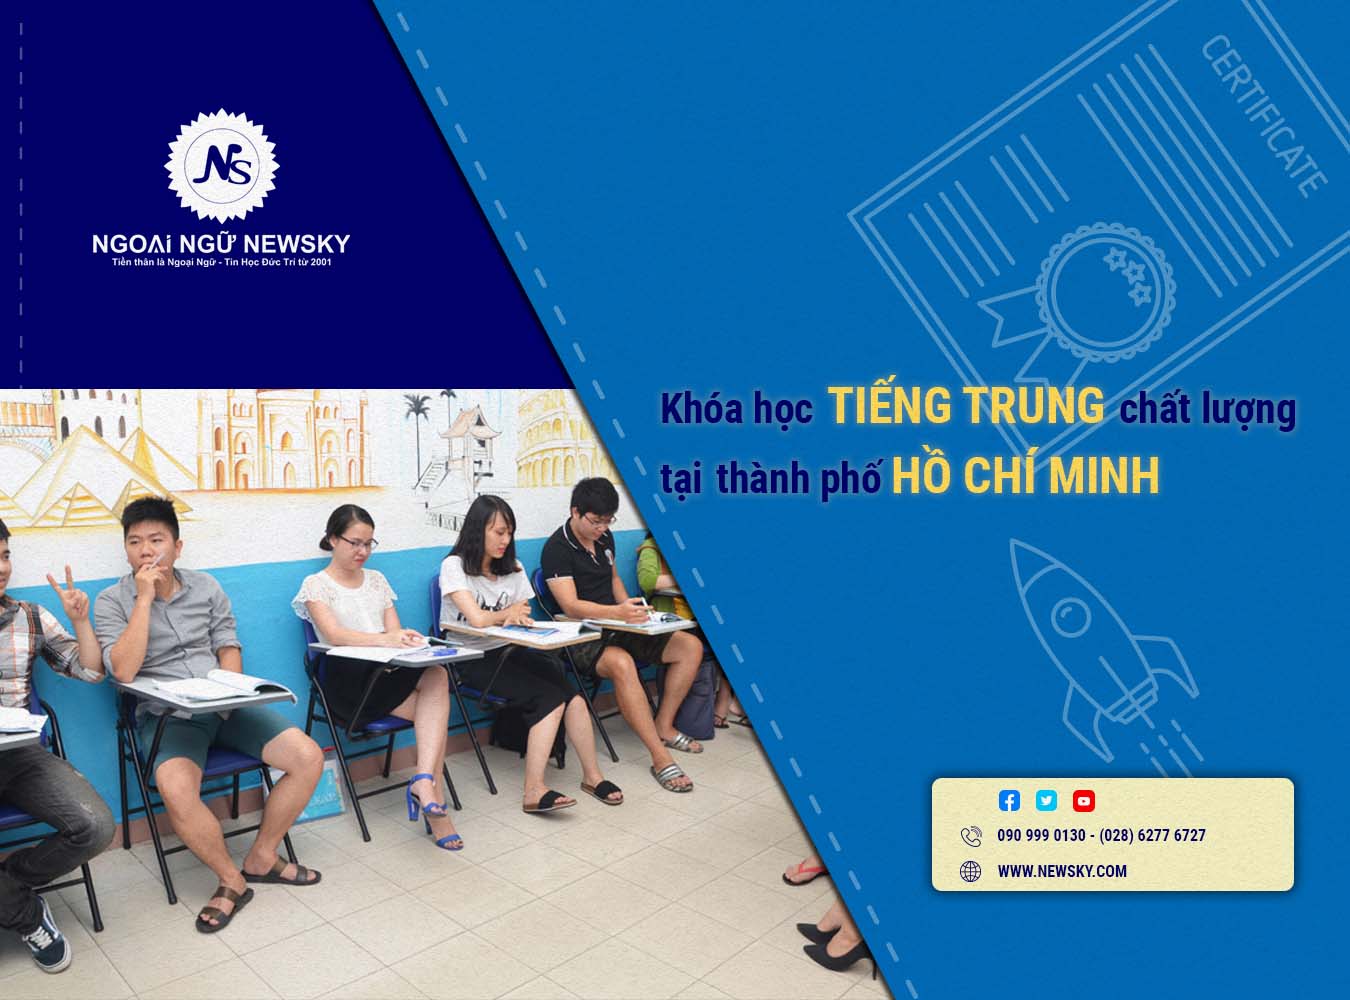 Khóa học tiếng Trung Chất Lượng tại TpHCM